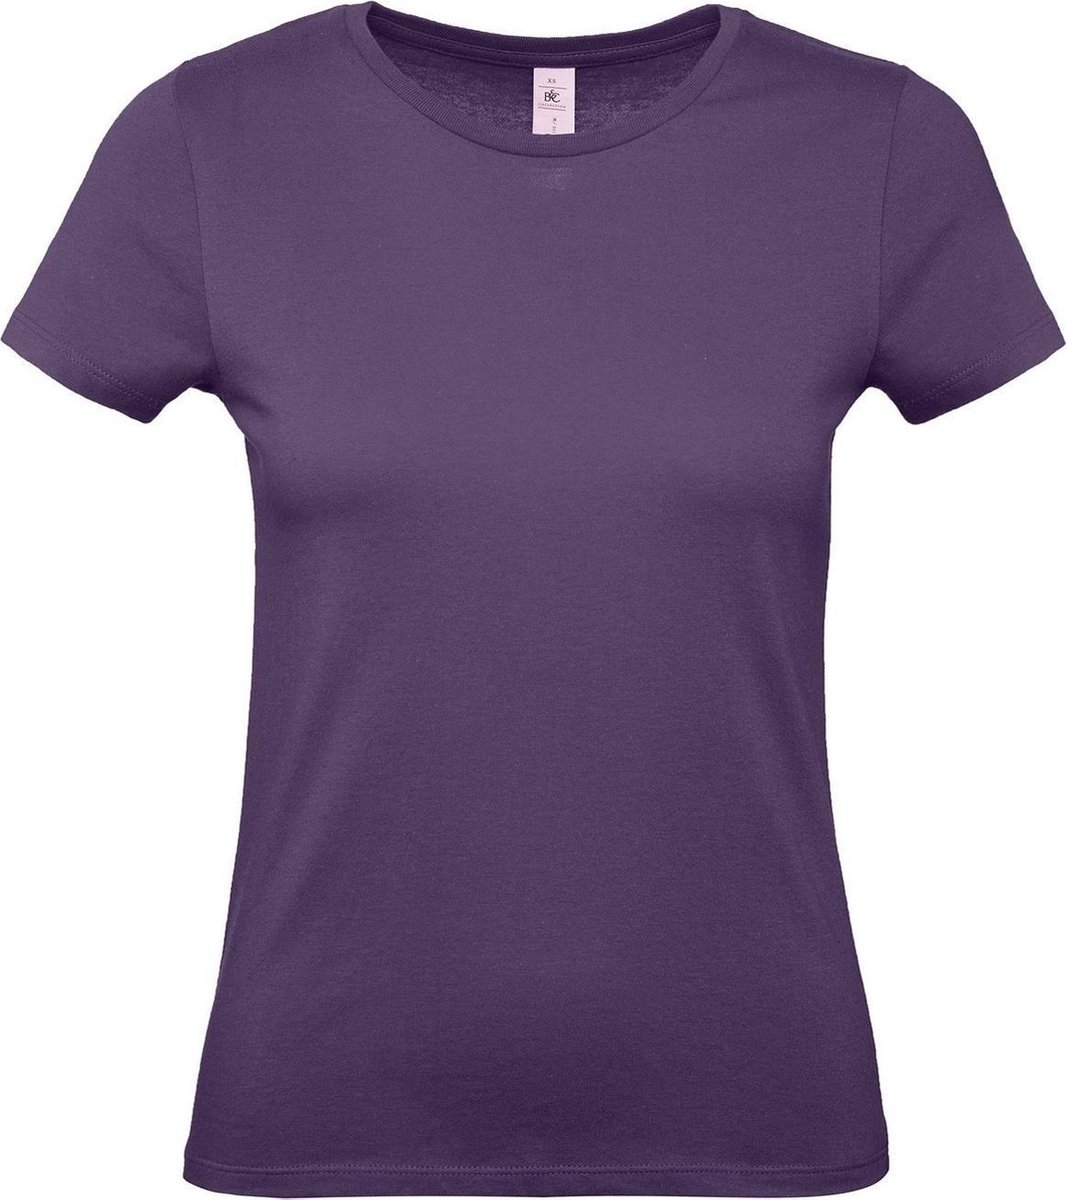 Set van 3x stuks paars basic t-shirts met ronde hals voor dames - katoen - 145 grams - paarse shirts / kleding, maat: XS (34)